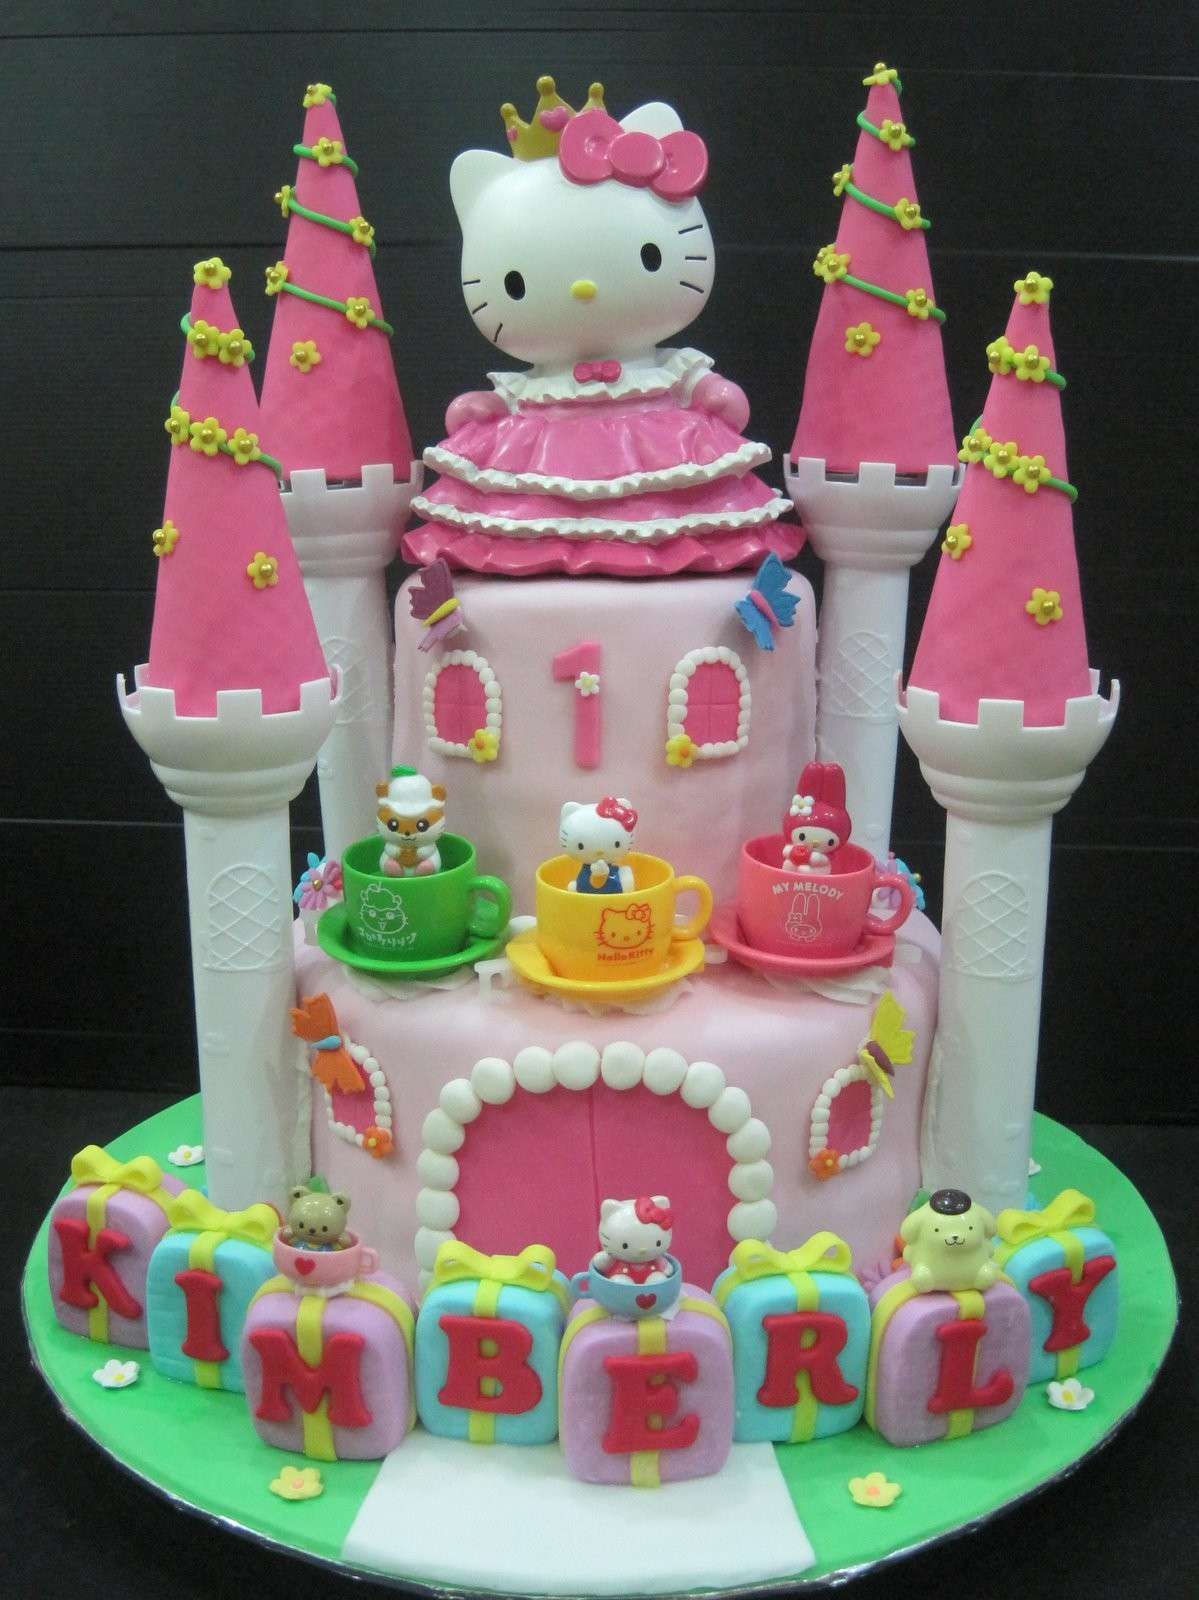 Torta Hello Kitty - 8 torta di compleanno della gattina Kitty - Irpot